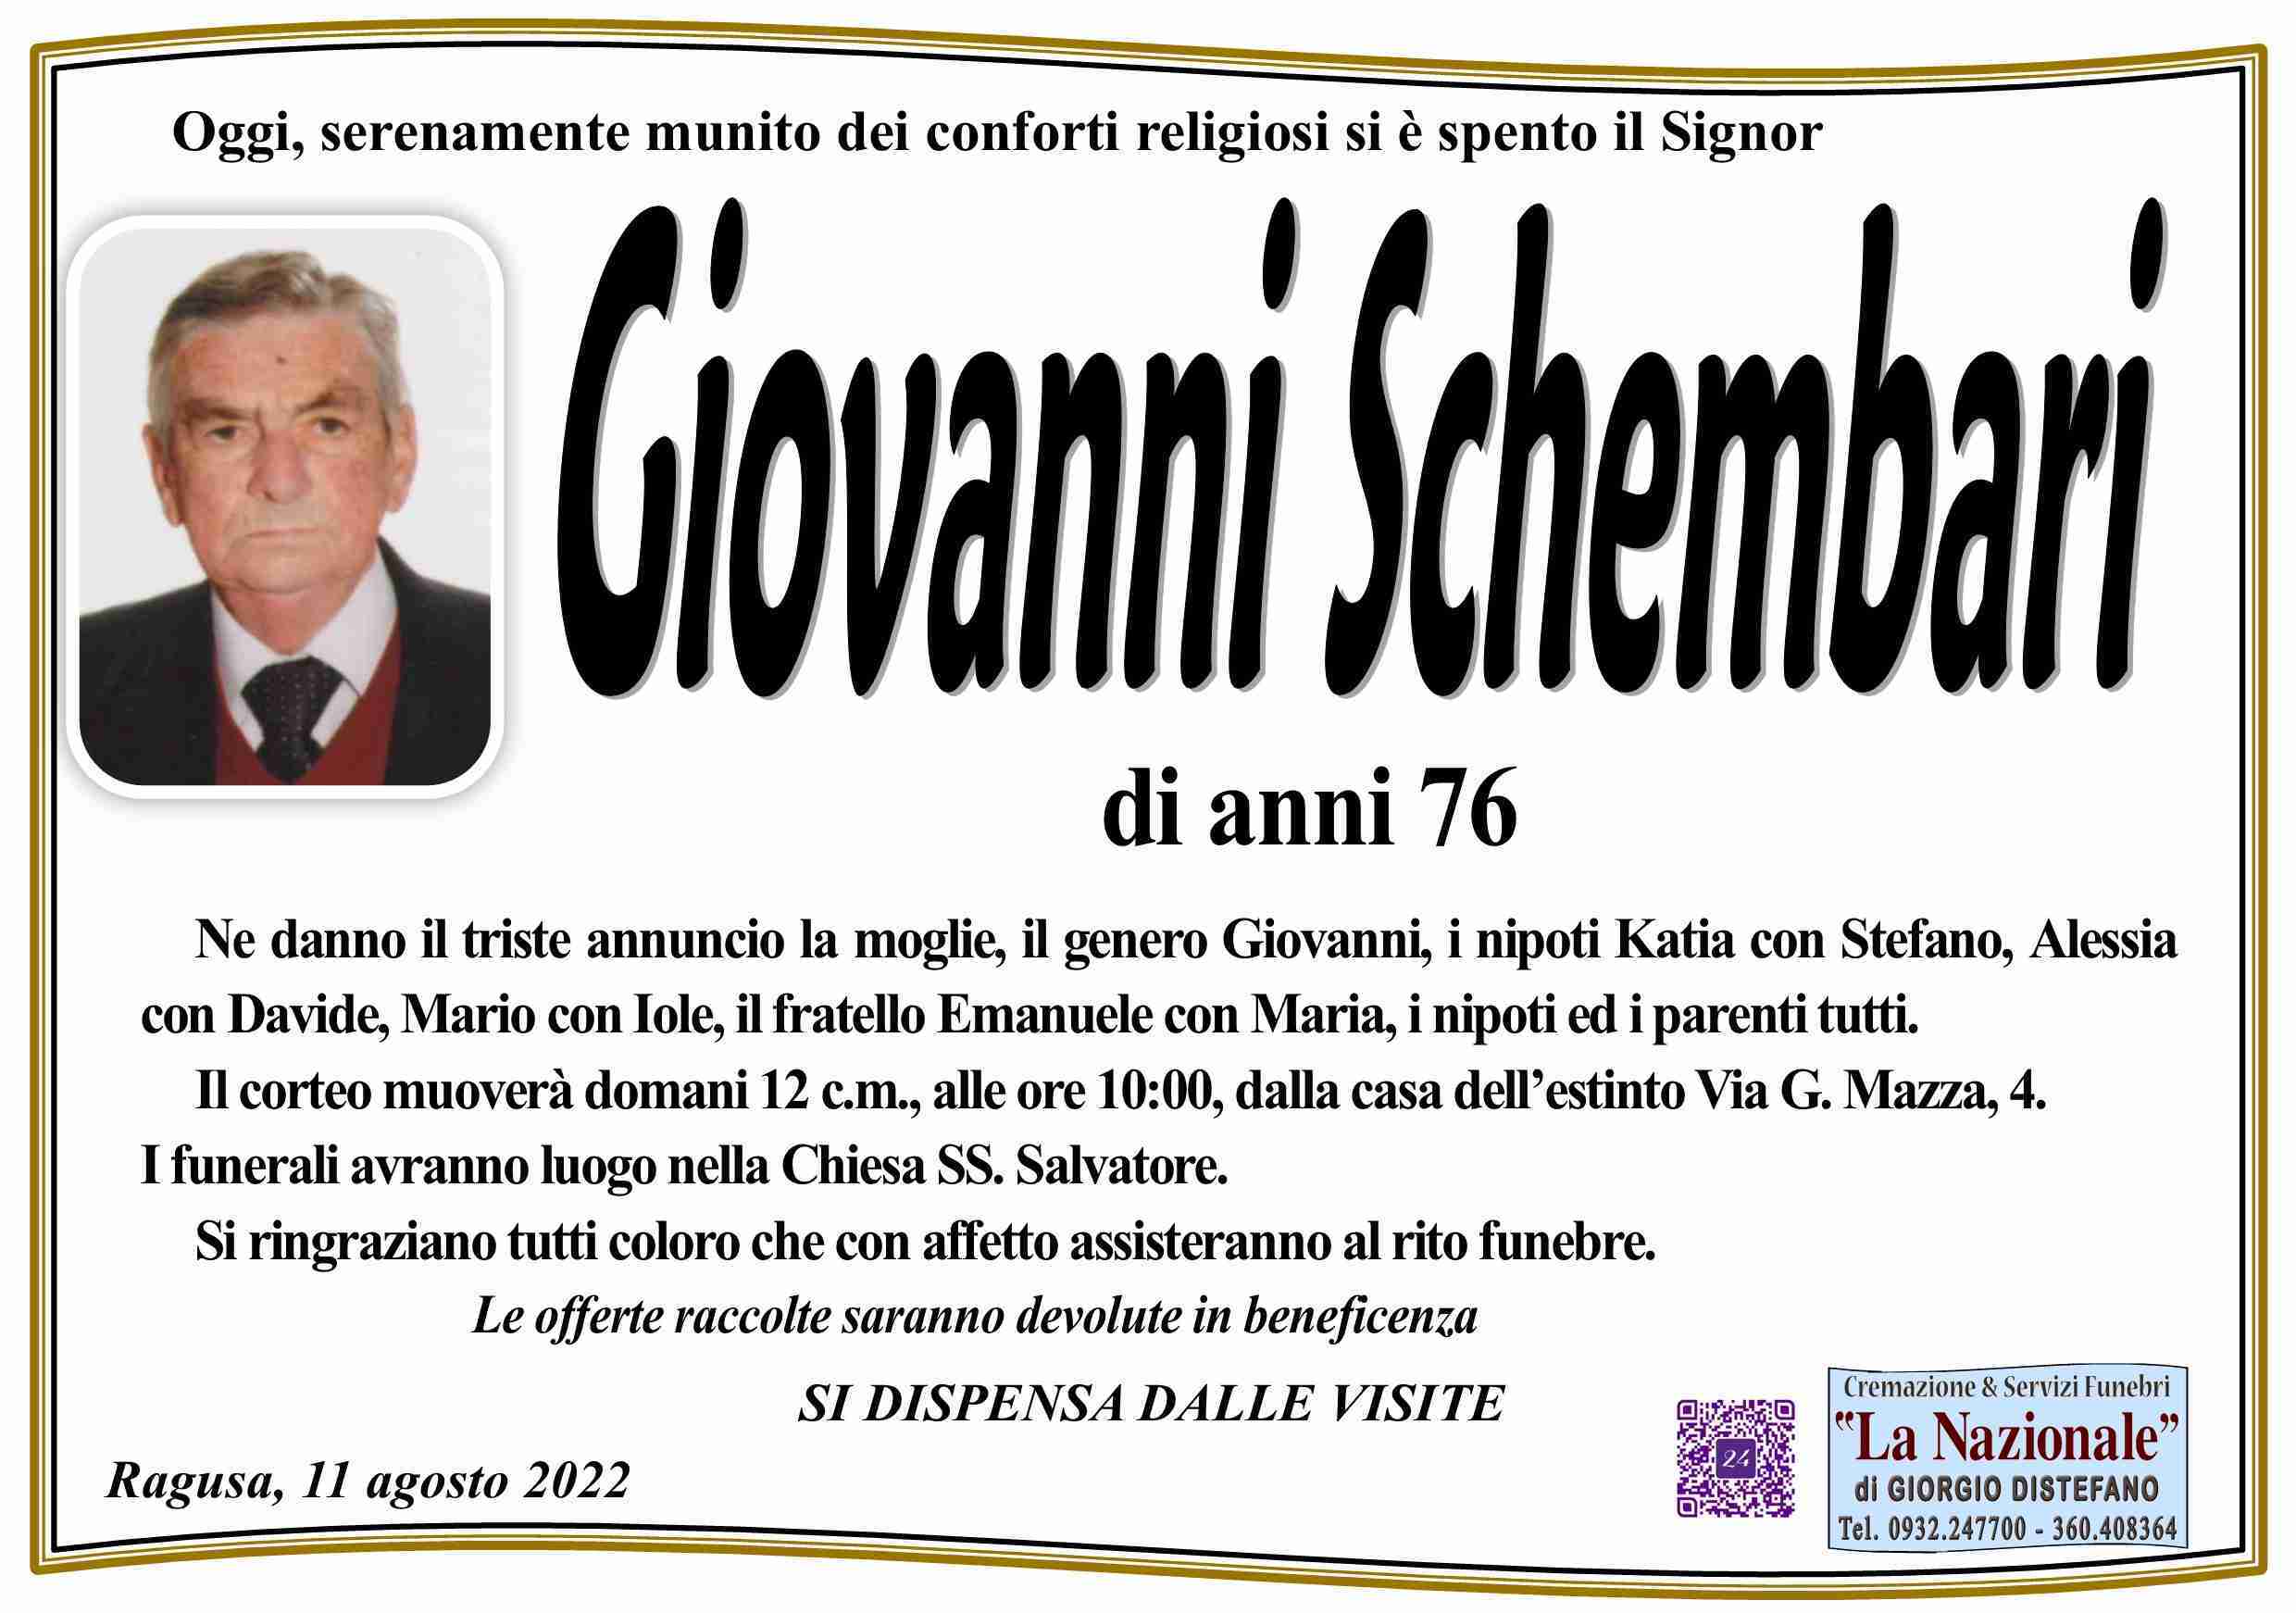 Giovanni Schembari